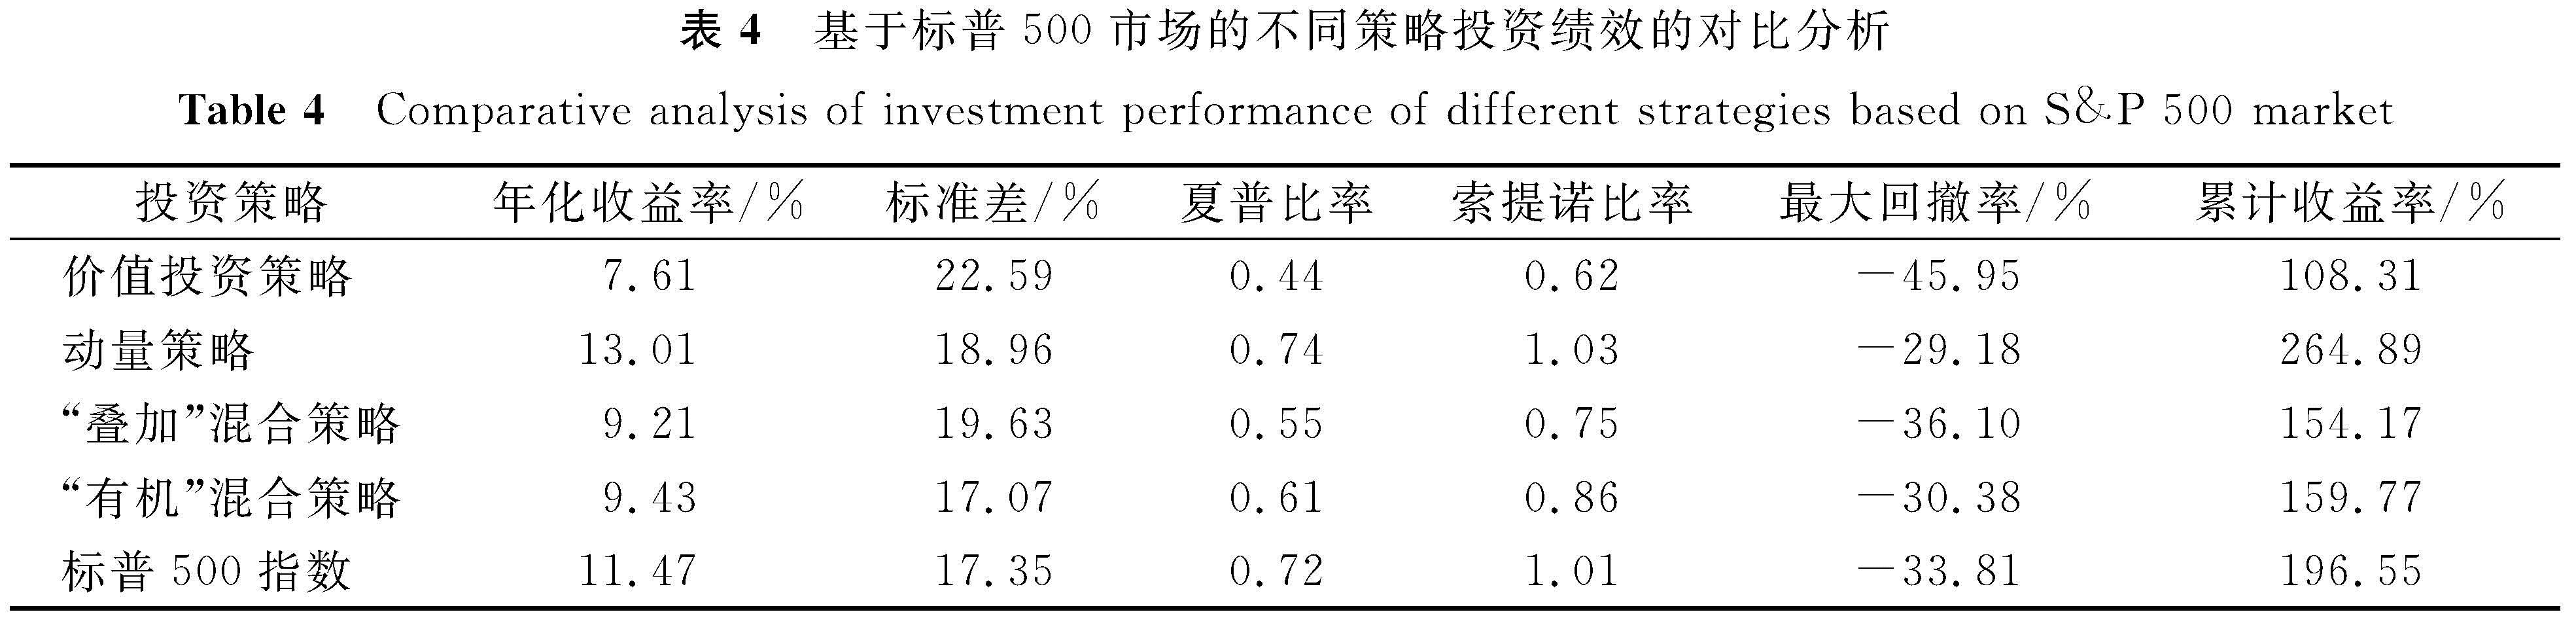 表4 基于标普500市场的不同策略投资绩效的对比分析<br/>Table 4 Comparative analysis of investment performance of different strategies based on S&P 500 market